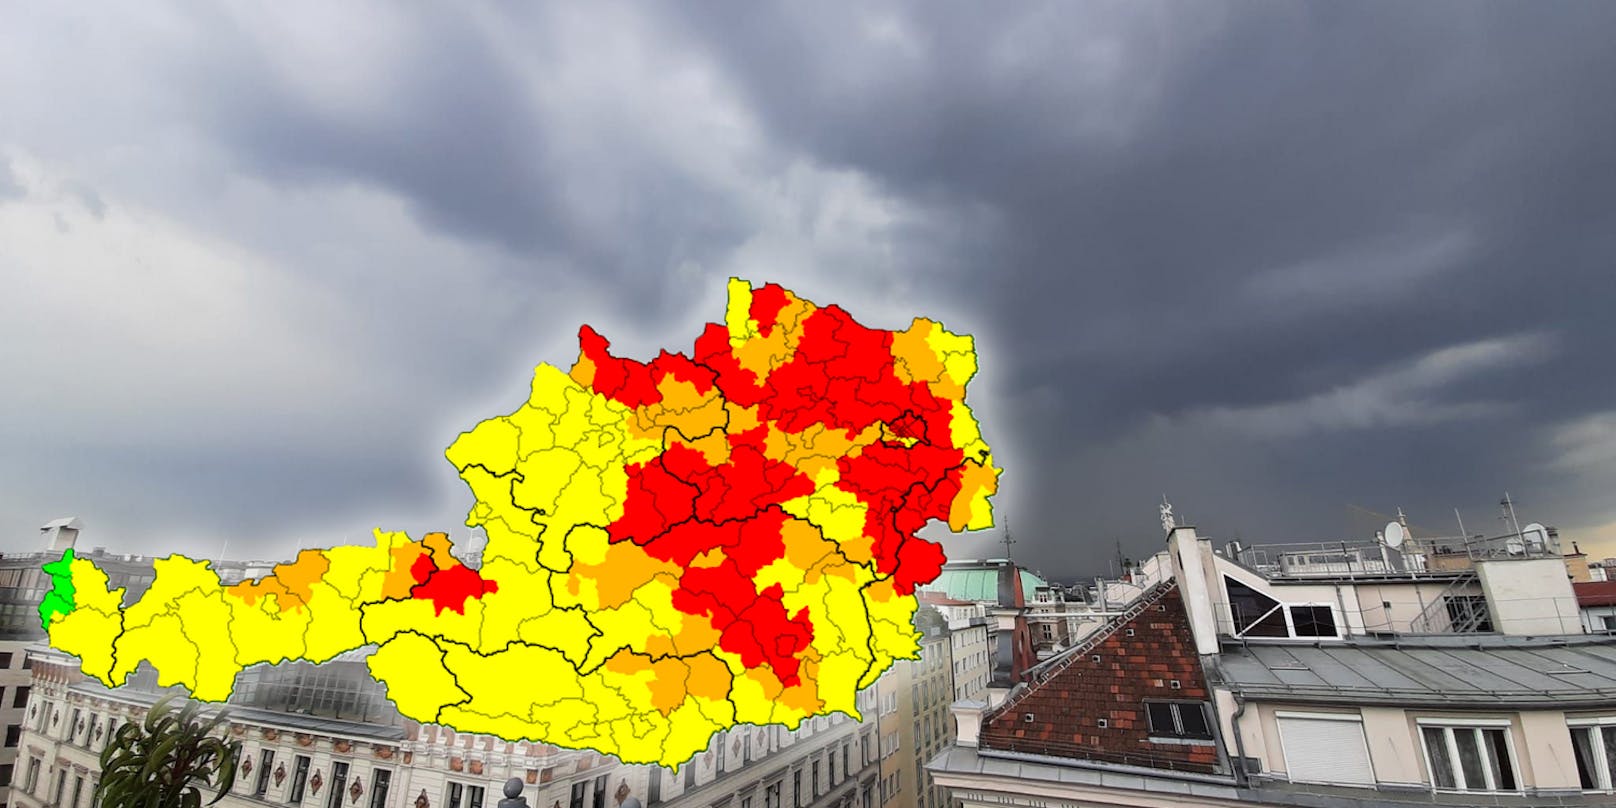 Für Wien wurde eine rote Unwetter-Warnung ausgerufen, doch das große Gewitter blieb aus.